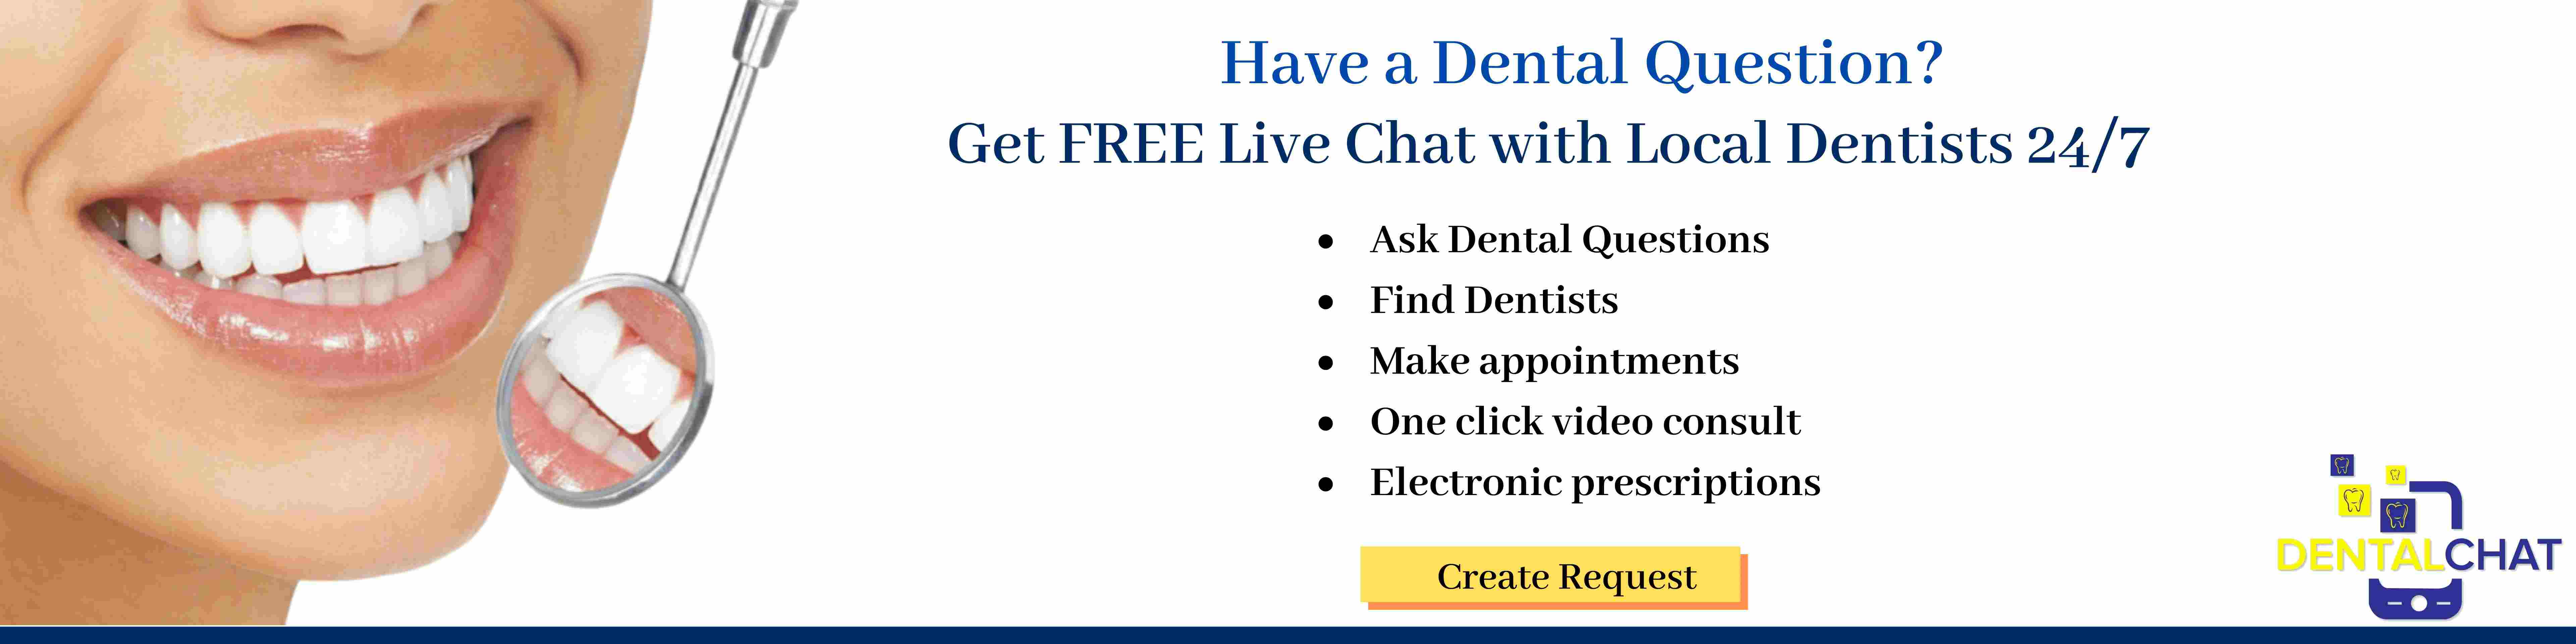 Teledentistry dental insurance consulting, dental plan info